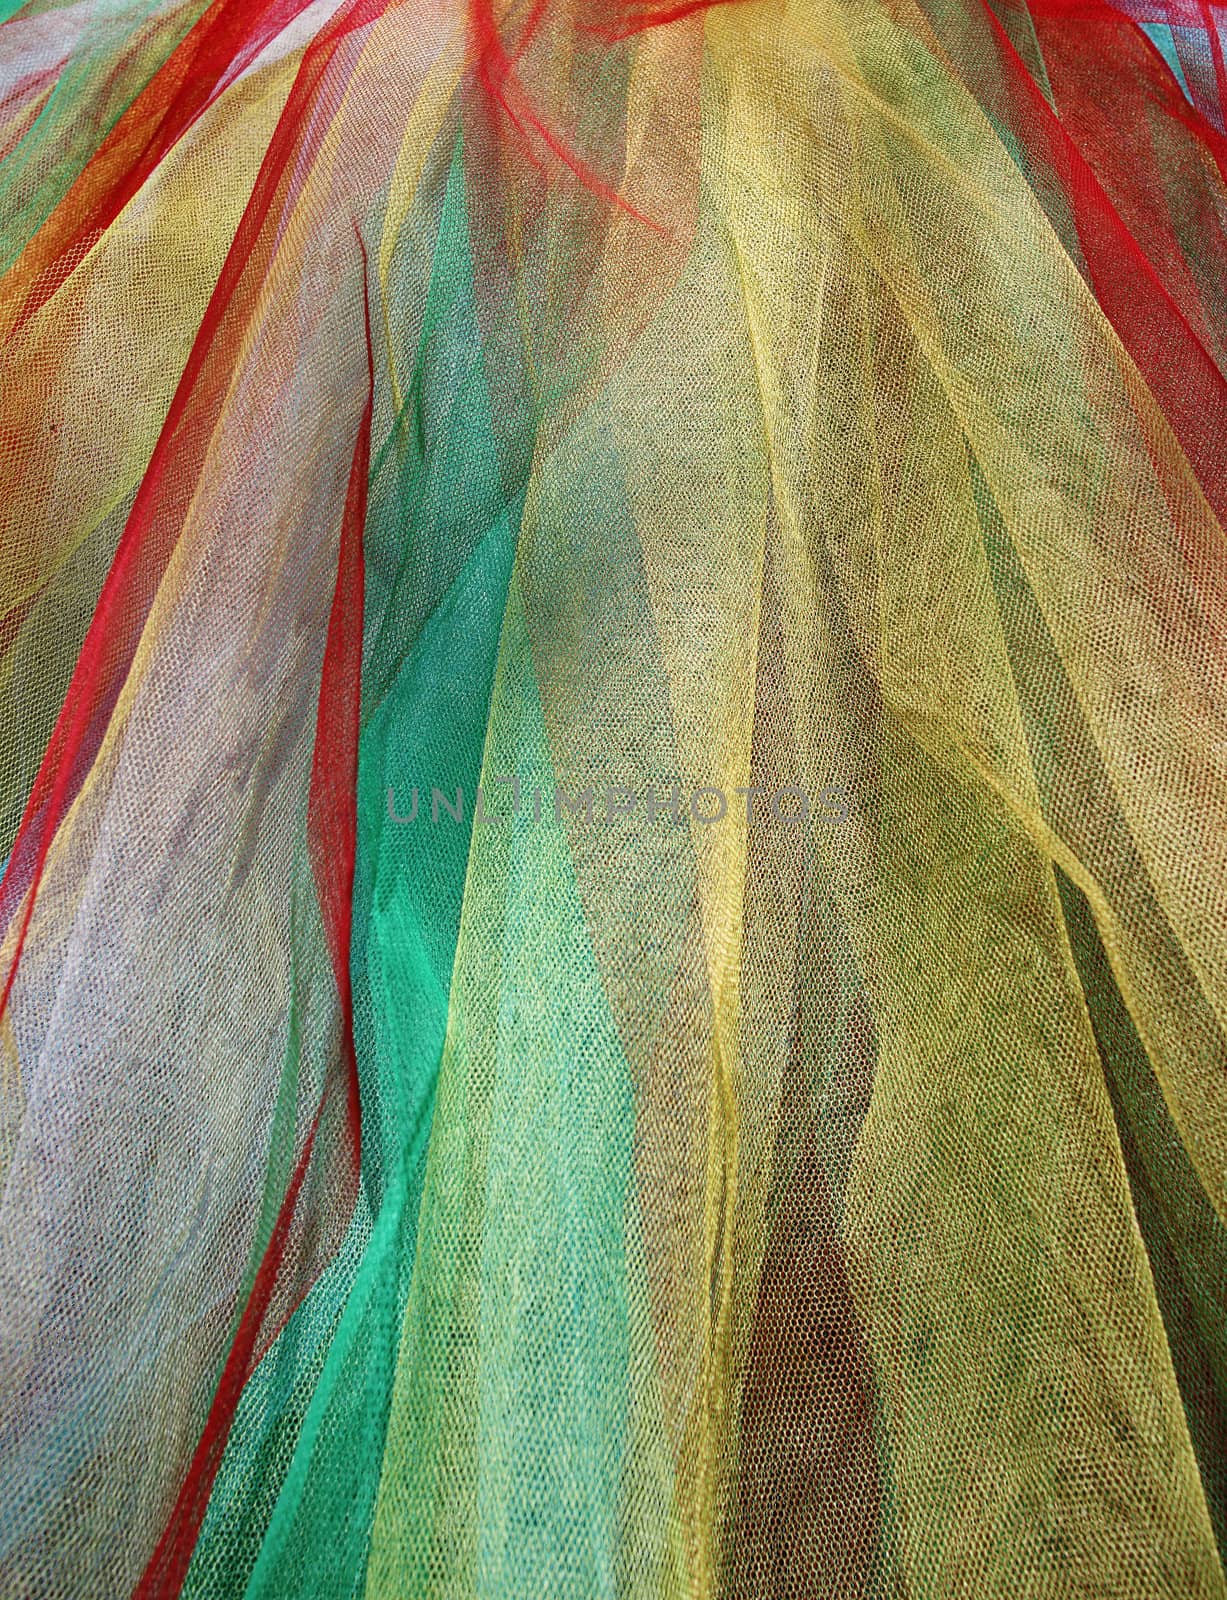 Full colored light net by shamtor